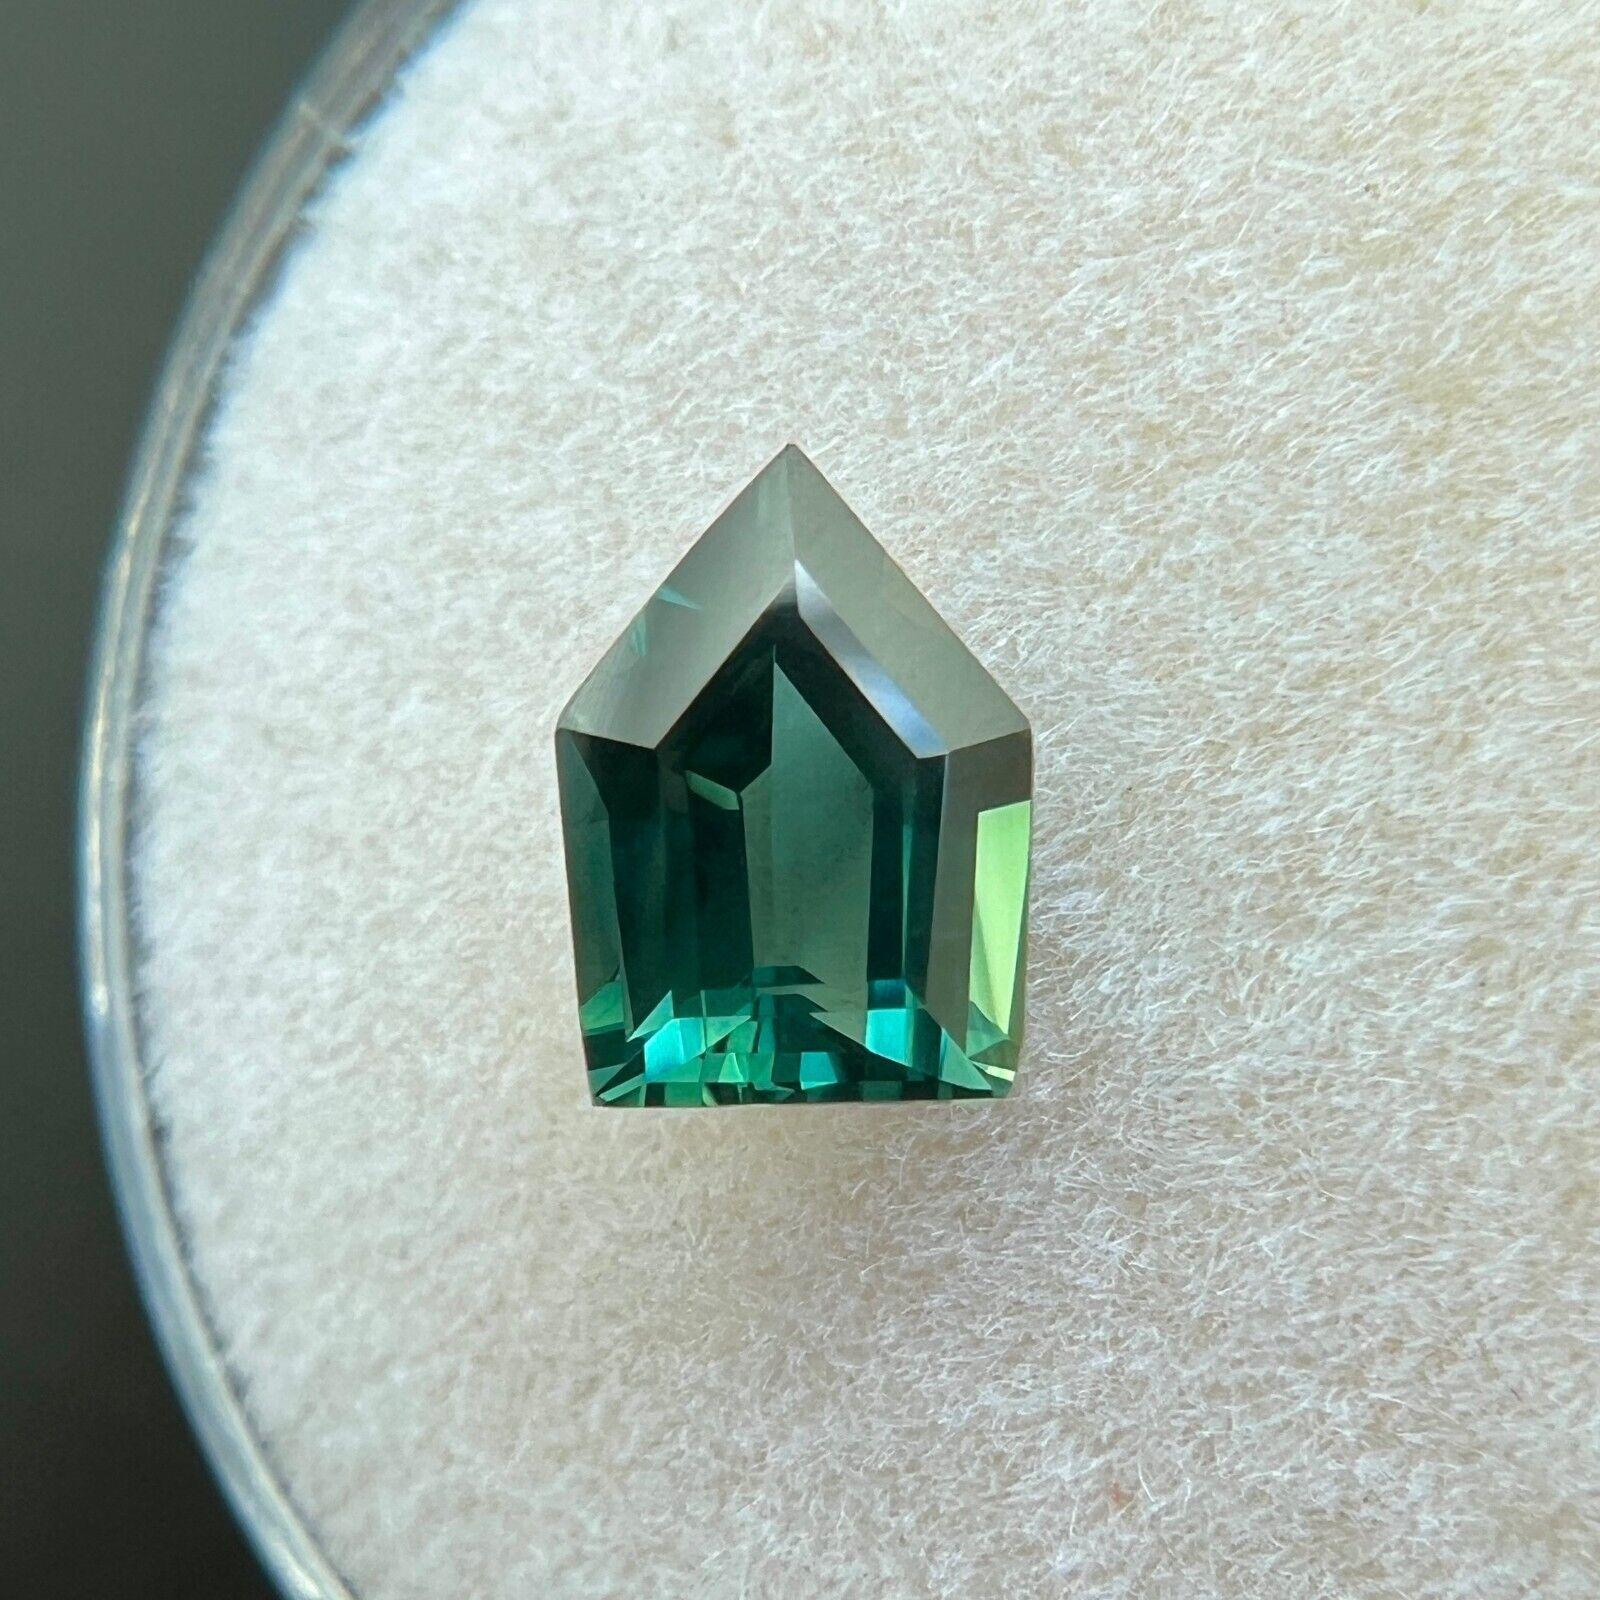 Saphir vert taille fantaisie unique de 1,06 carat, certifié GRA, non chauffé

Saphir vert naturel non traité certifié GRA.
Saphir de 1,06 carat d'une belle couleur vert vif.
Entièrement certifiée par GRA confirmant que la pierre est naturelle et non